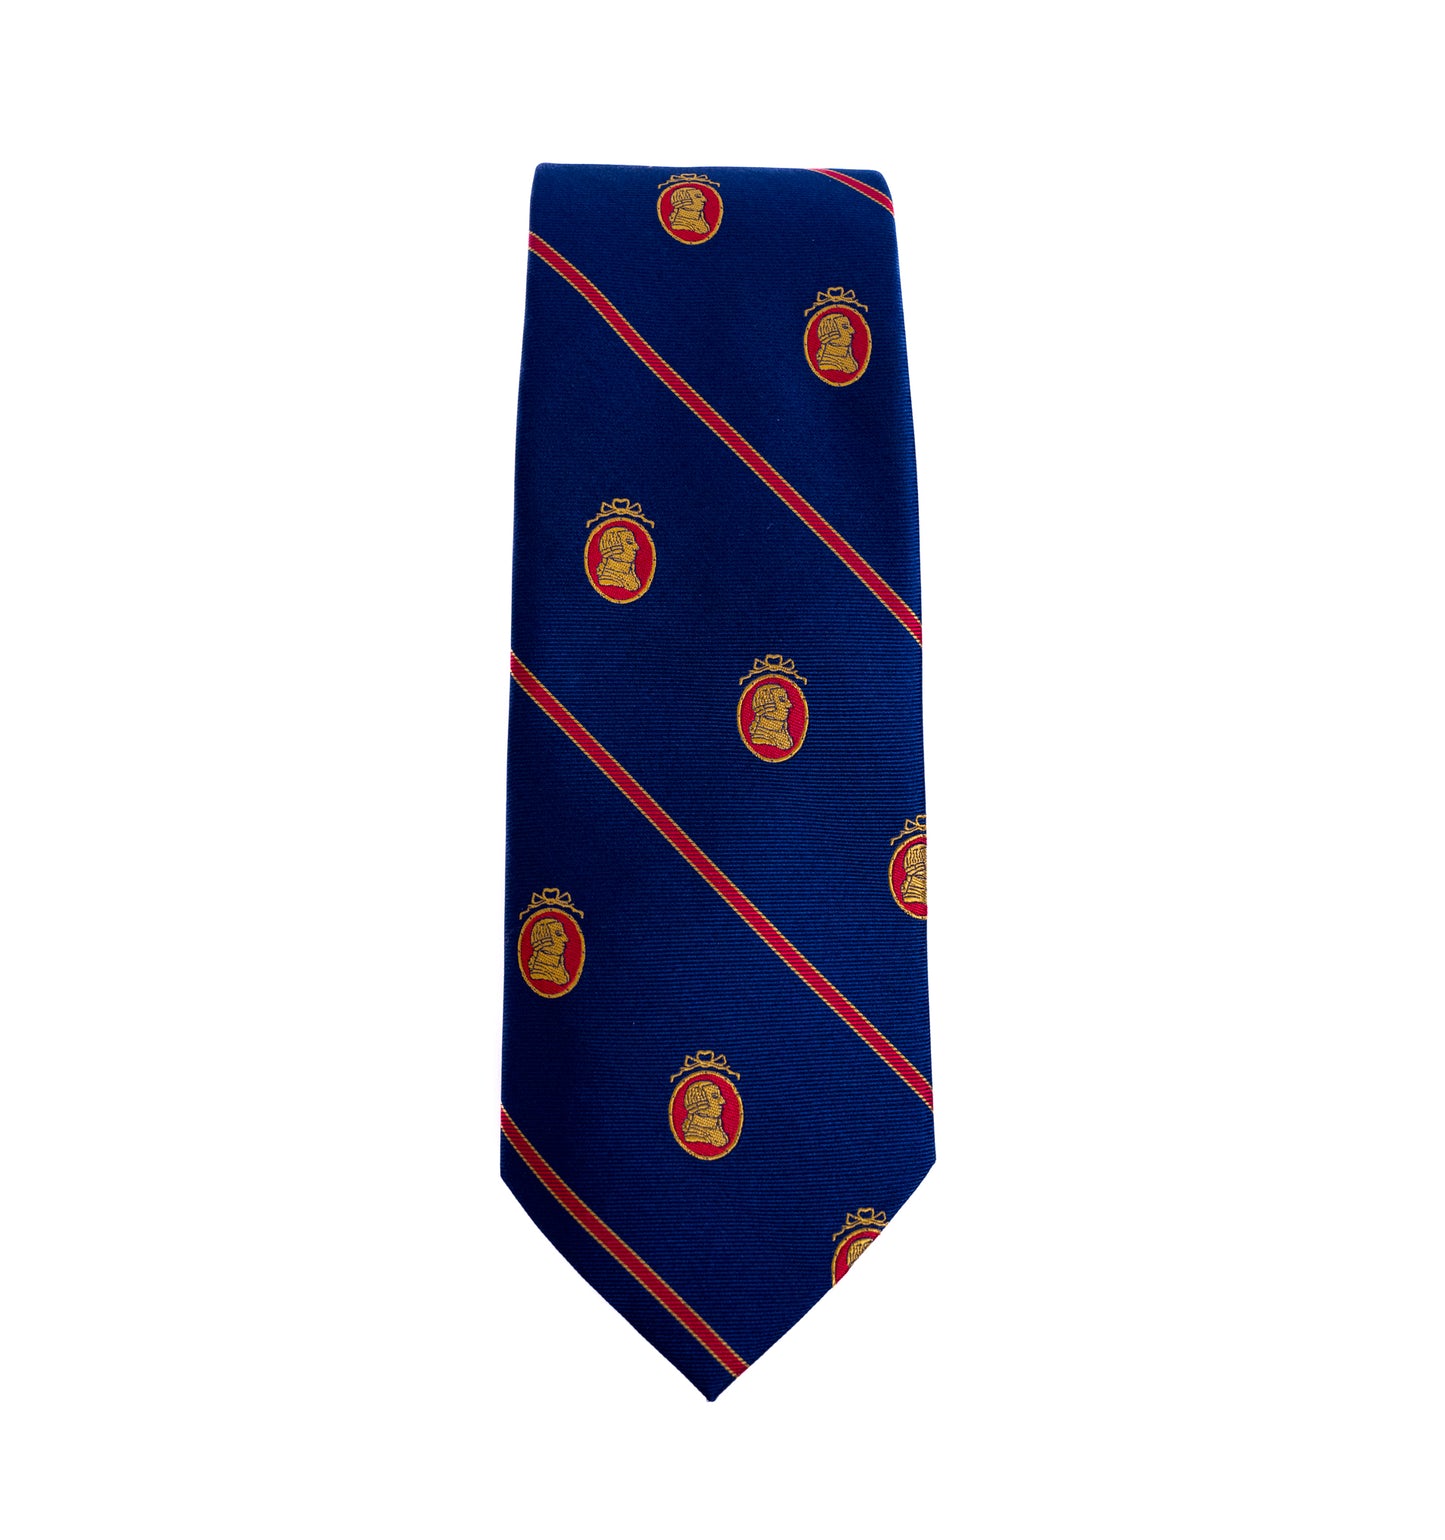 Adam Smith Navy Necktie (LI-2)